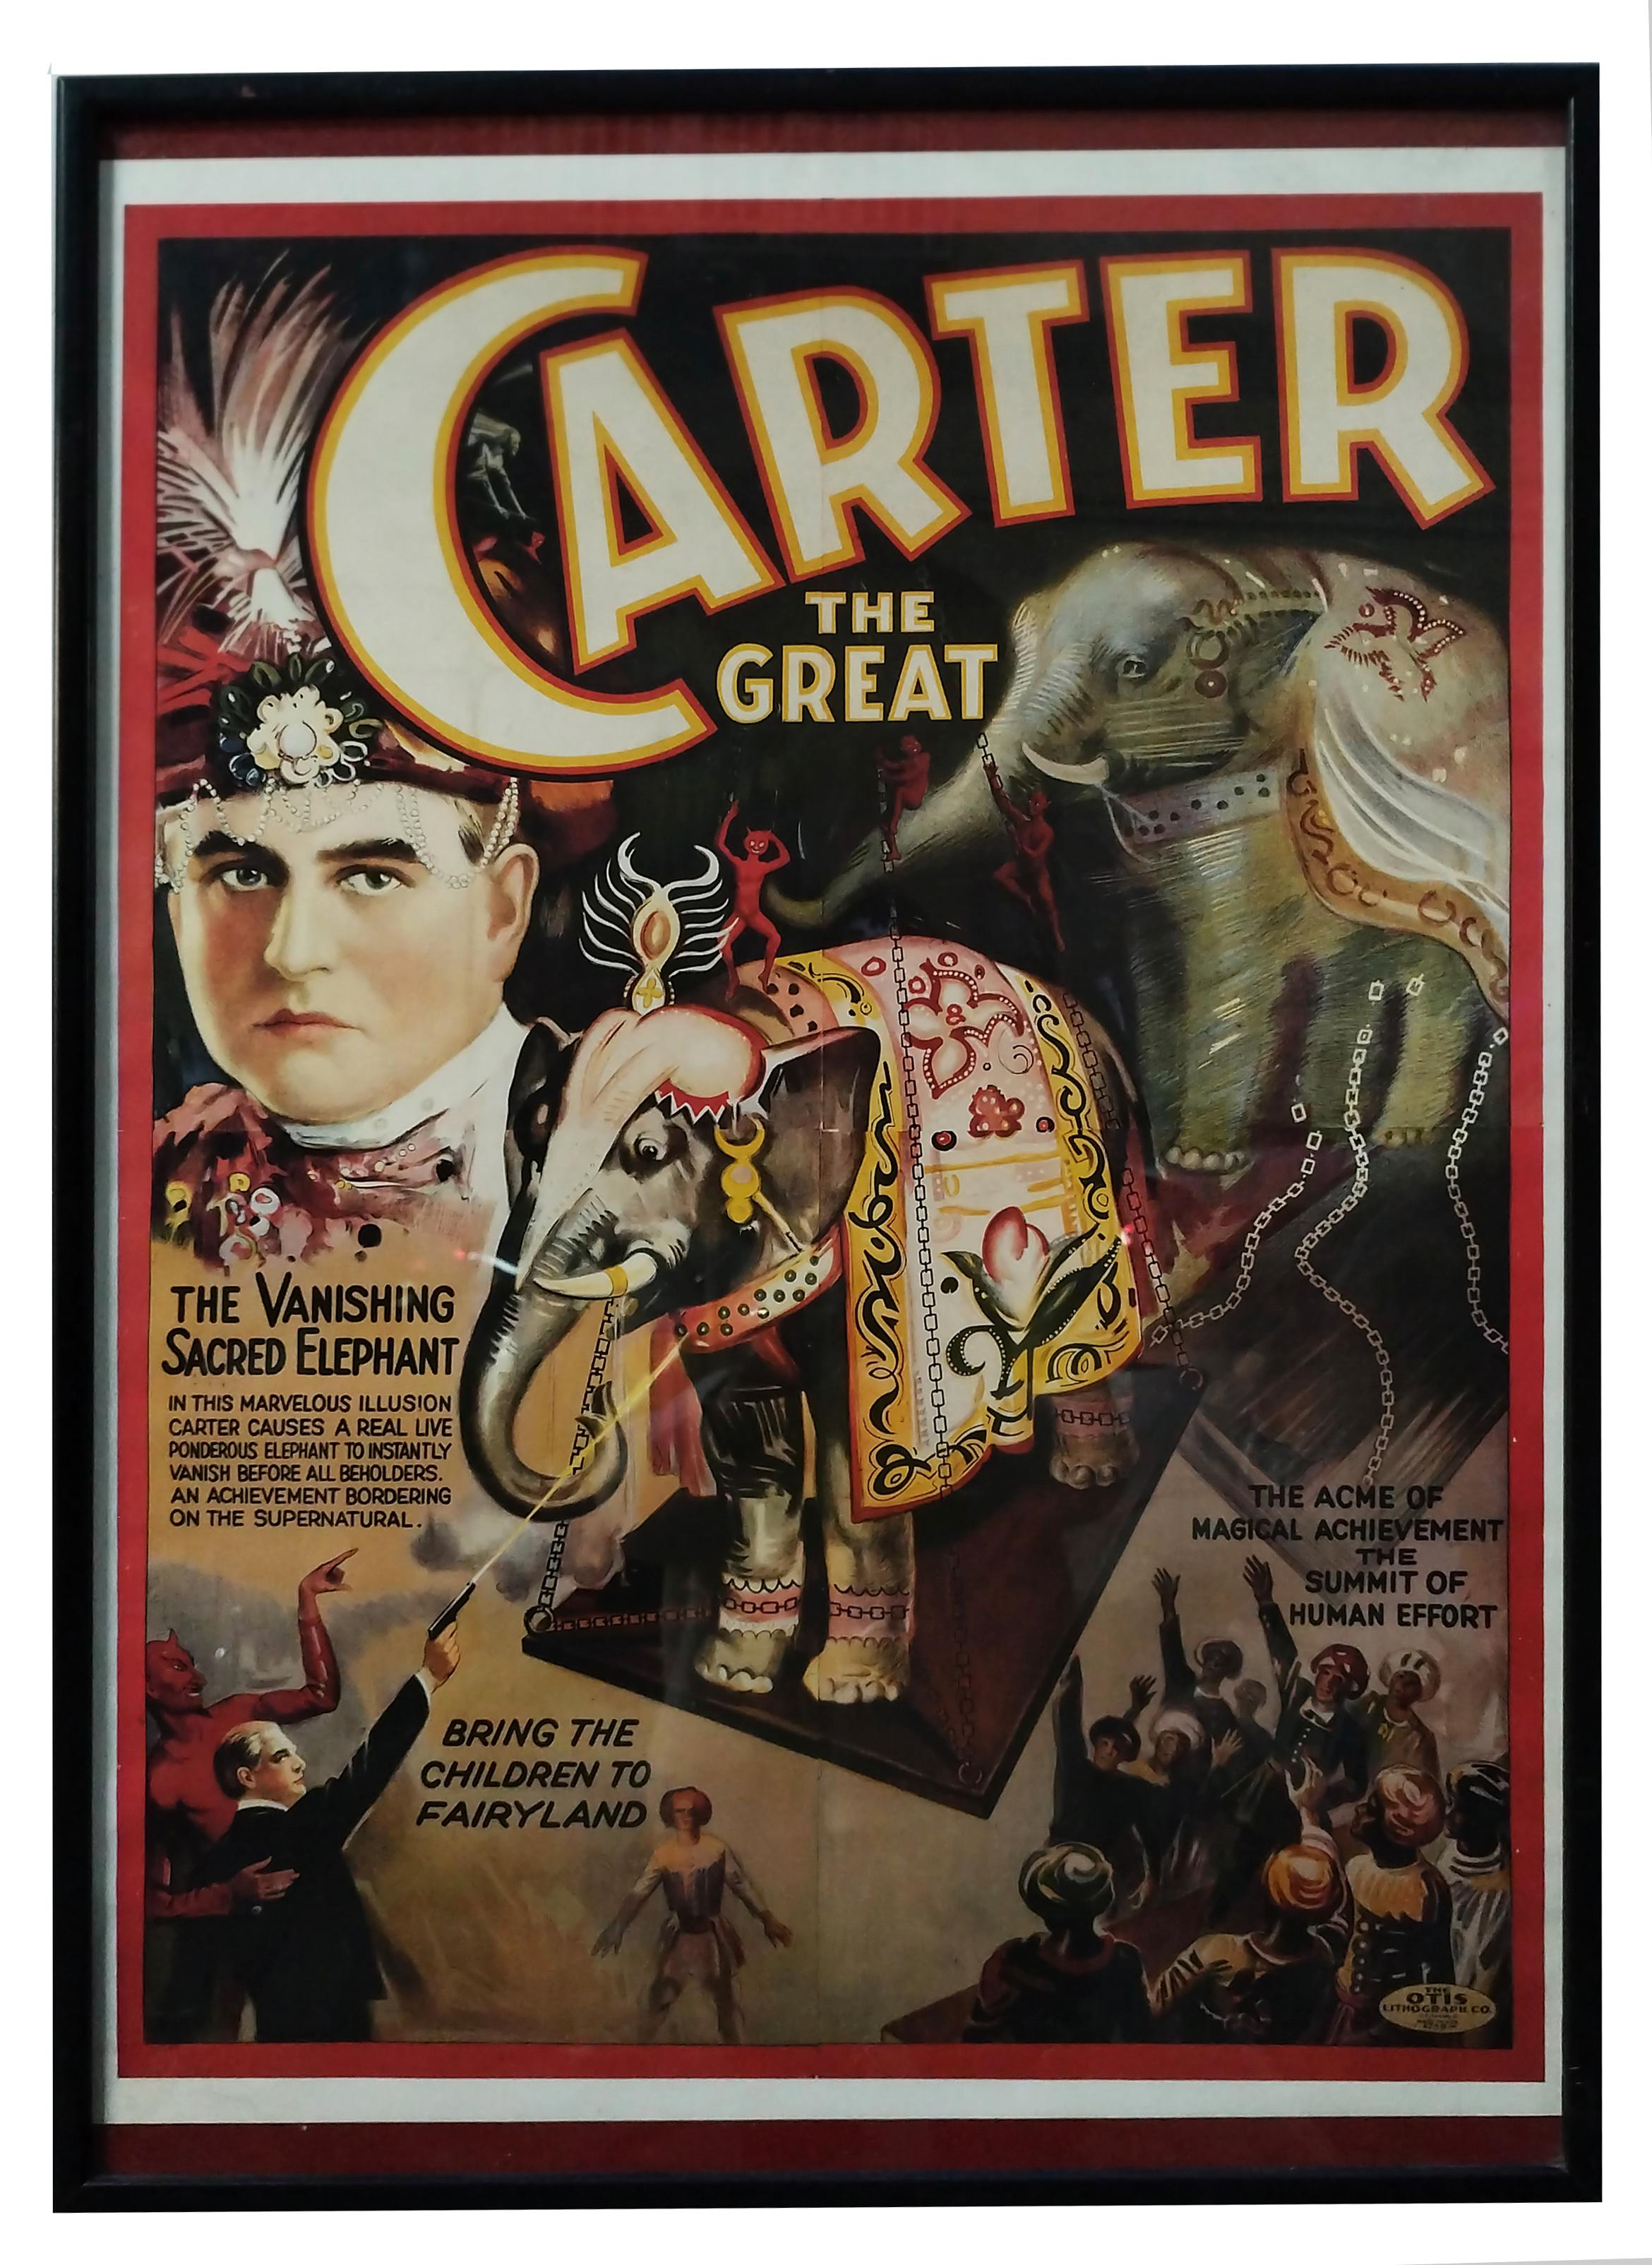 THE EXPLOITING ELEPHANT - Lithografisches Plakat von Carter dem Großen, 1970er Jahre – Art von Unknown